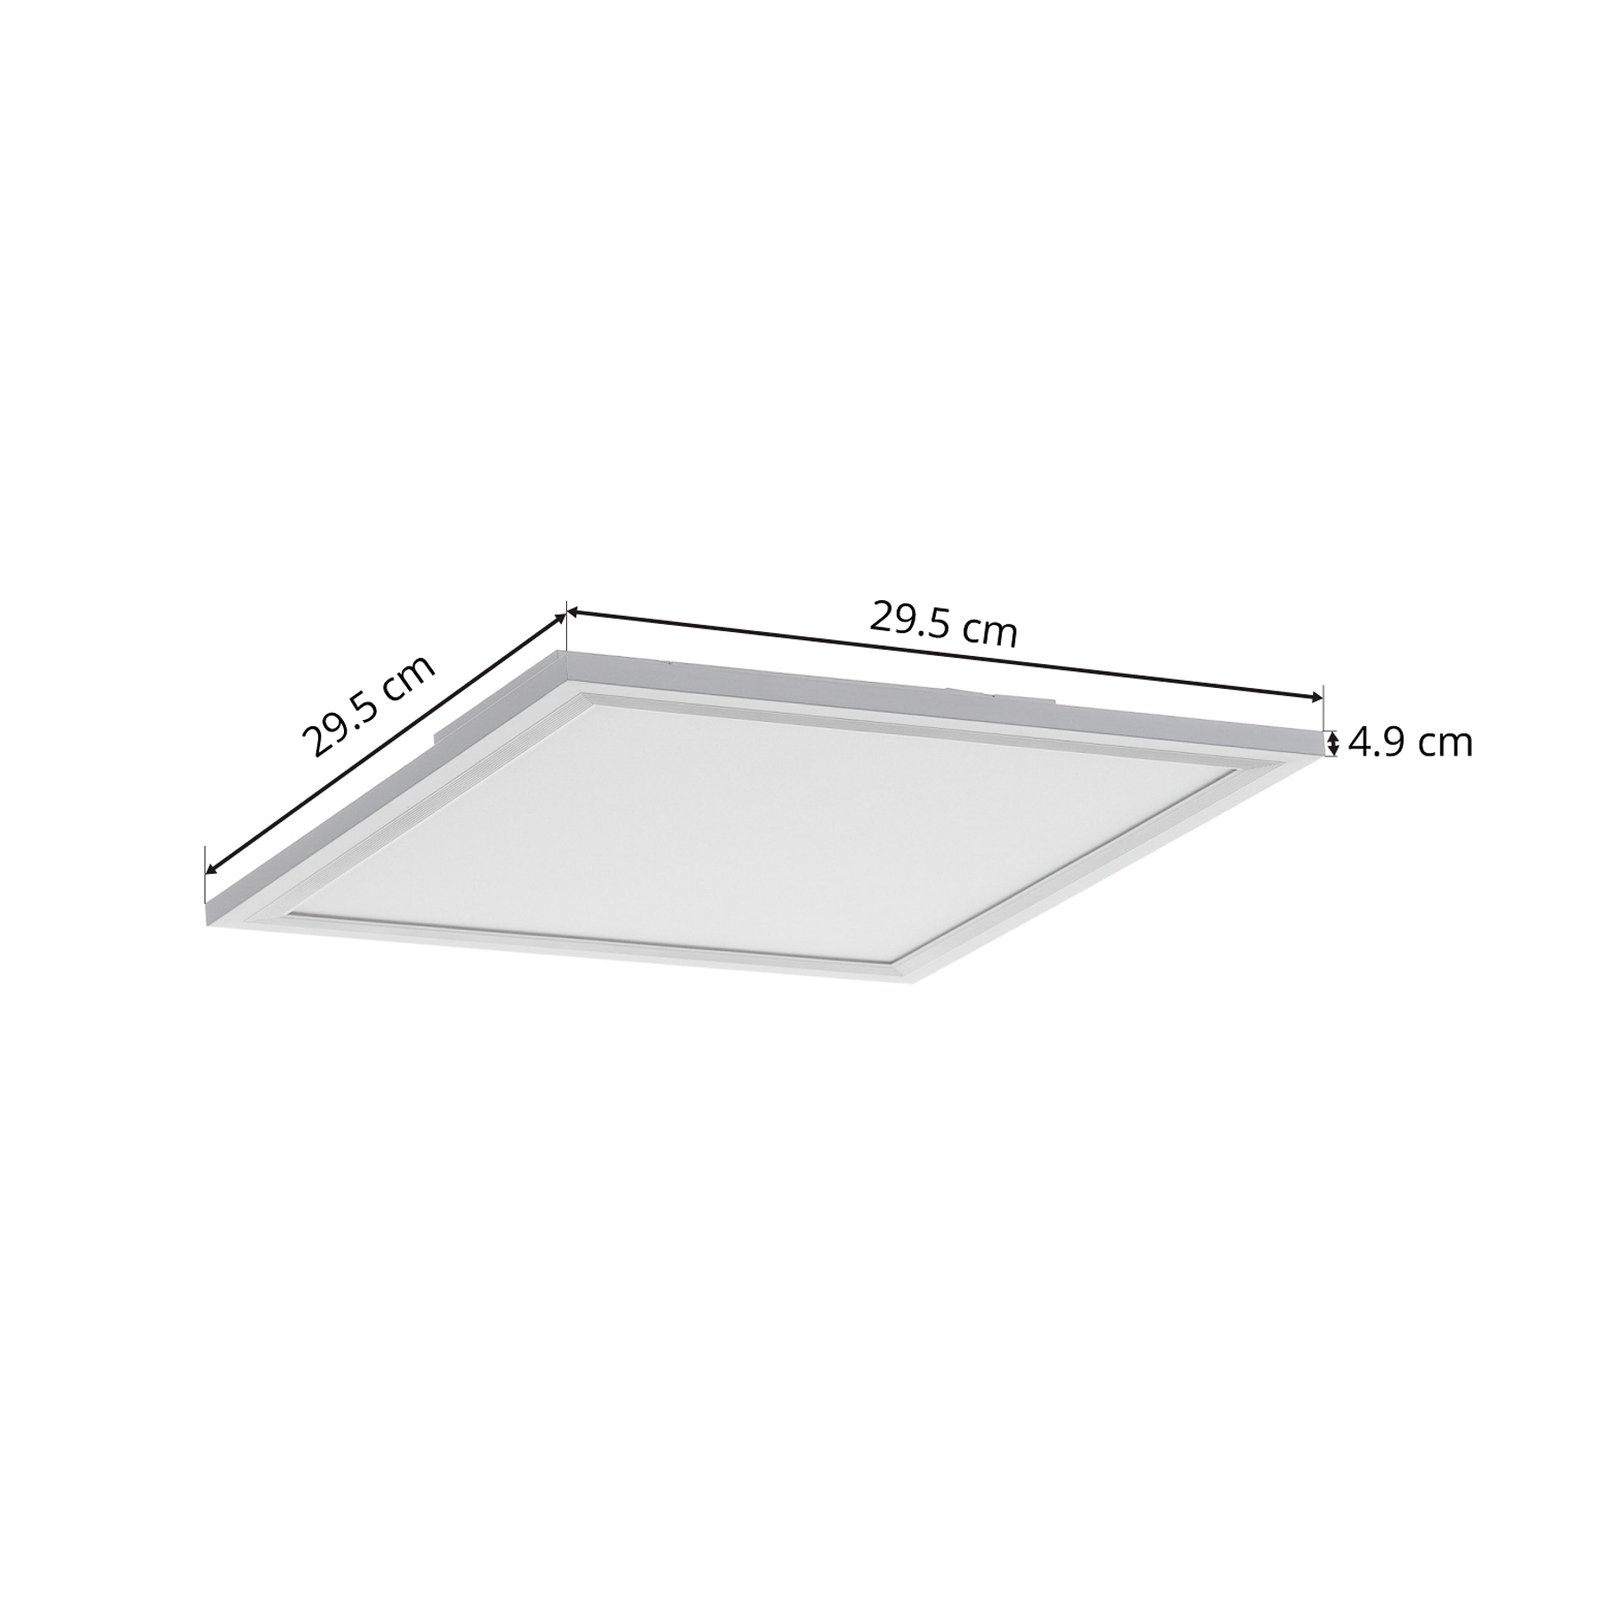 LED-Deckenlampe Piatto, Sensor, 29,5 x 29,5 cm